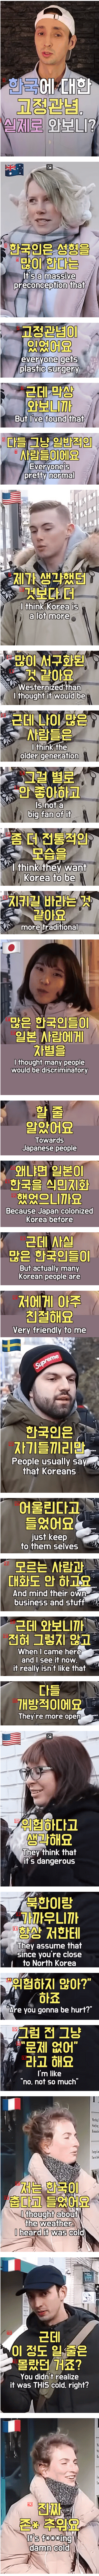 외국인이 한국에 와서 깨진 고정 관념들